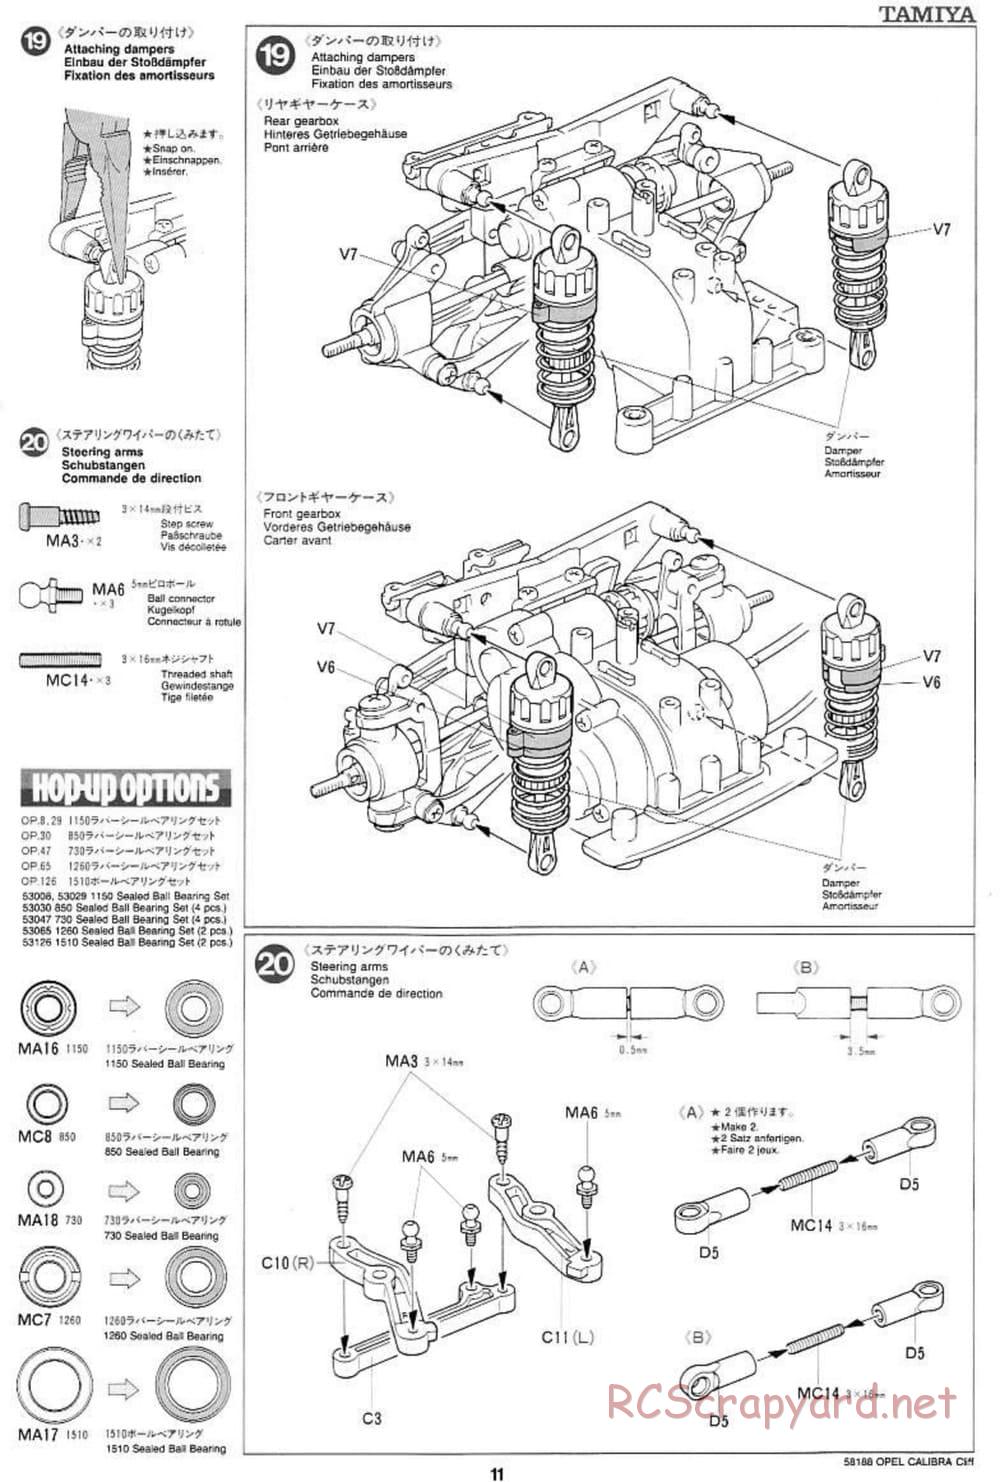 Tamiya - Opel Calibra Cliff - TA-03F Chassis - Manual - Page 11